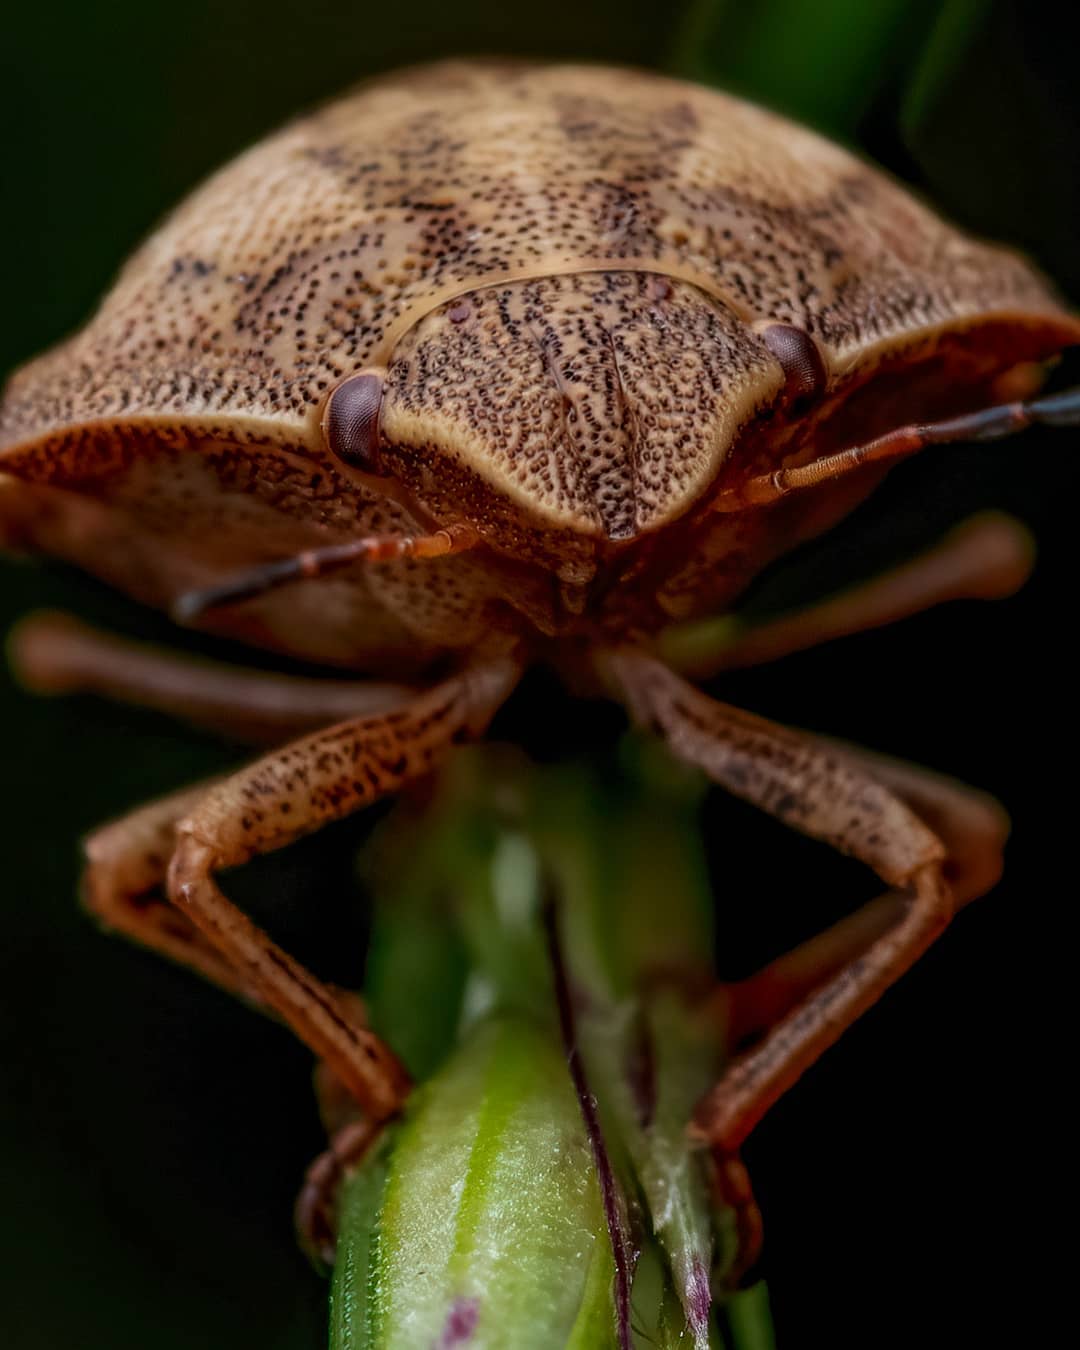 Удивительные макроснимки насекомых от Рори Джеймса Льюиса